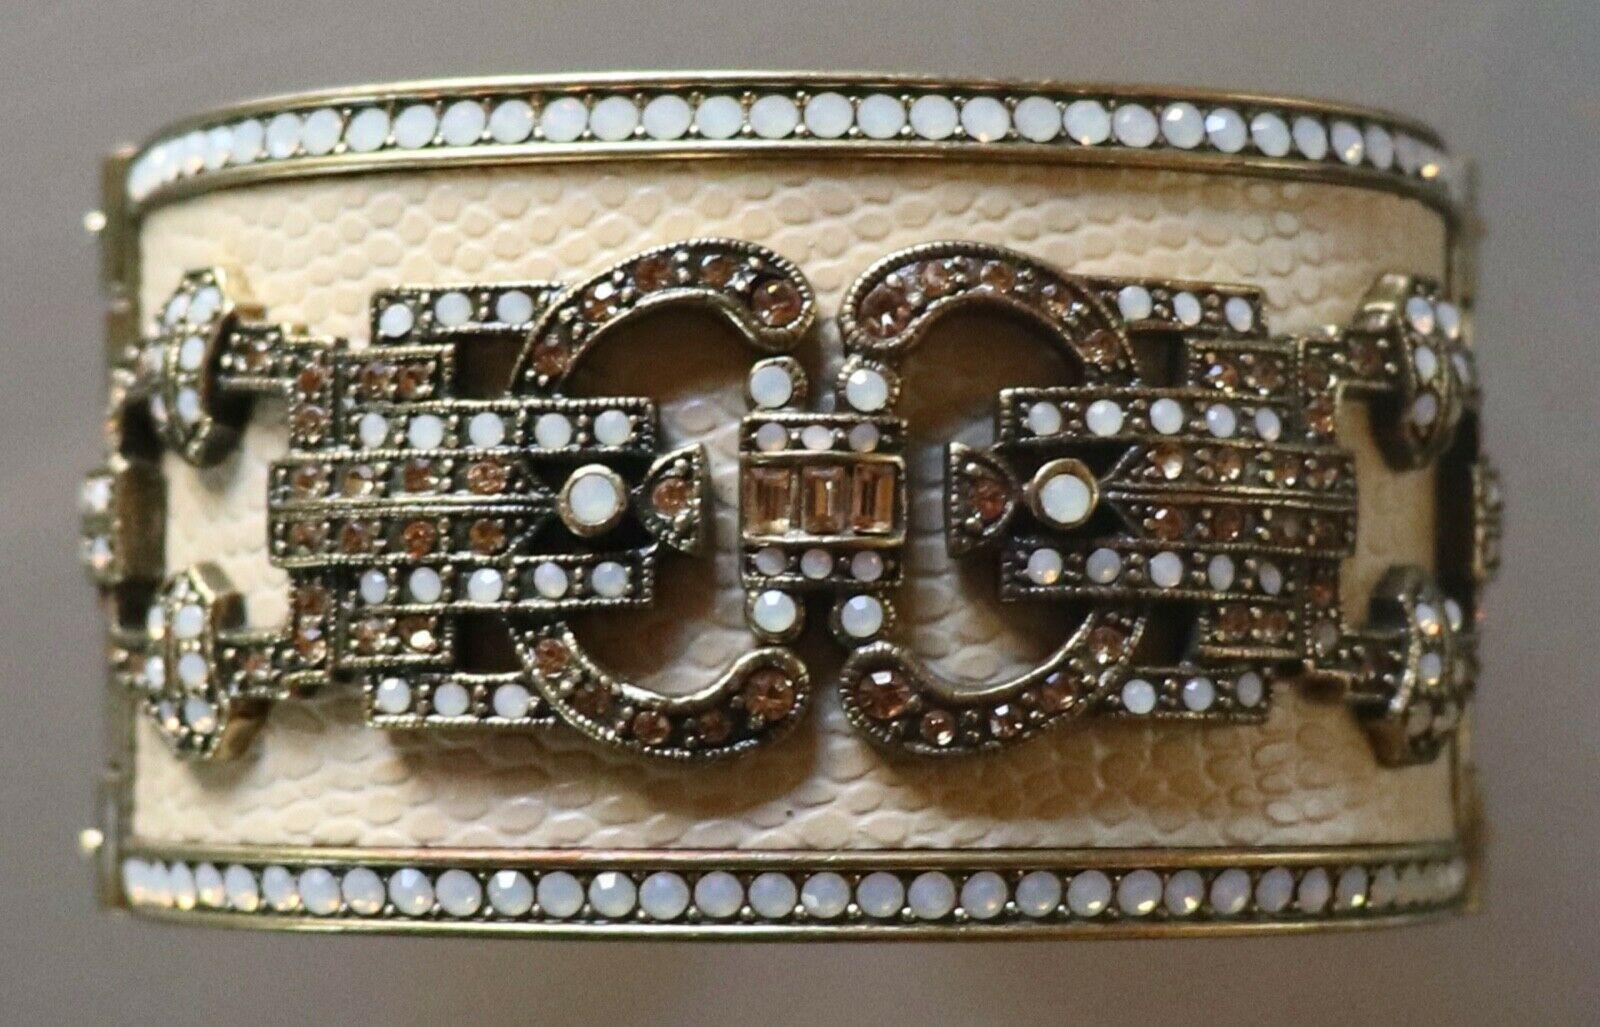 Einfach schön Double Hinged Ecru Emaille Manschette Armband, in Kristallen umrandet und Mitte mit bunten Swarovski Kristallen in einem kunstvollen Design verziert; über geprägtem Leder. Messen ca. 1,63 